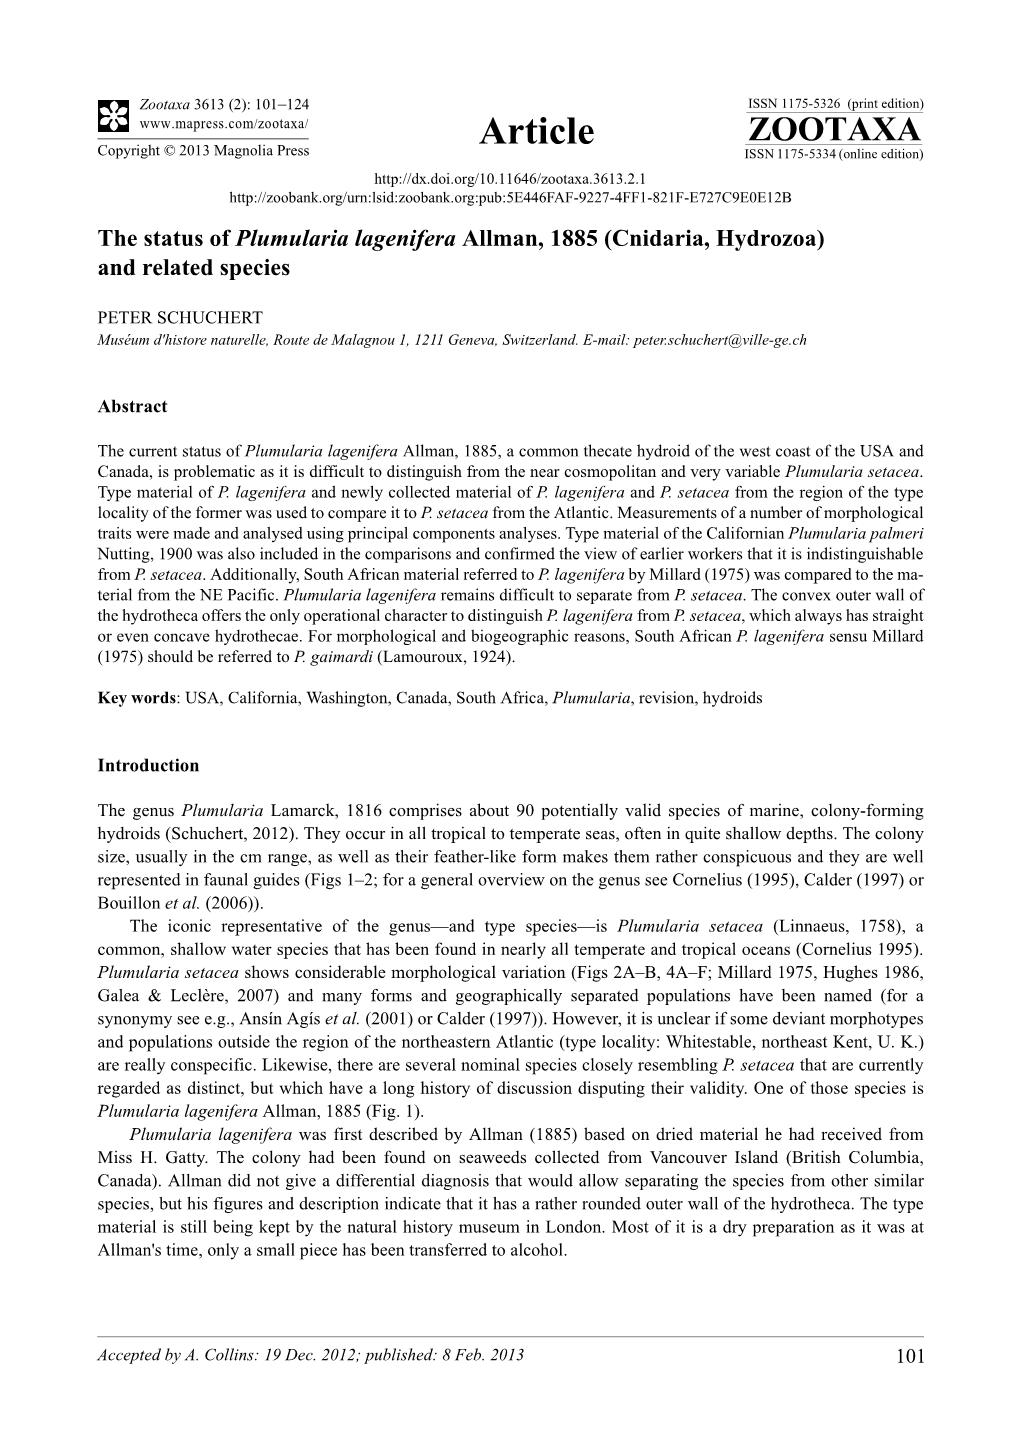 The Status of Plumularia Lagenifera Allman, 1885 (Cnidaria, Hydrozoa) and Related Species